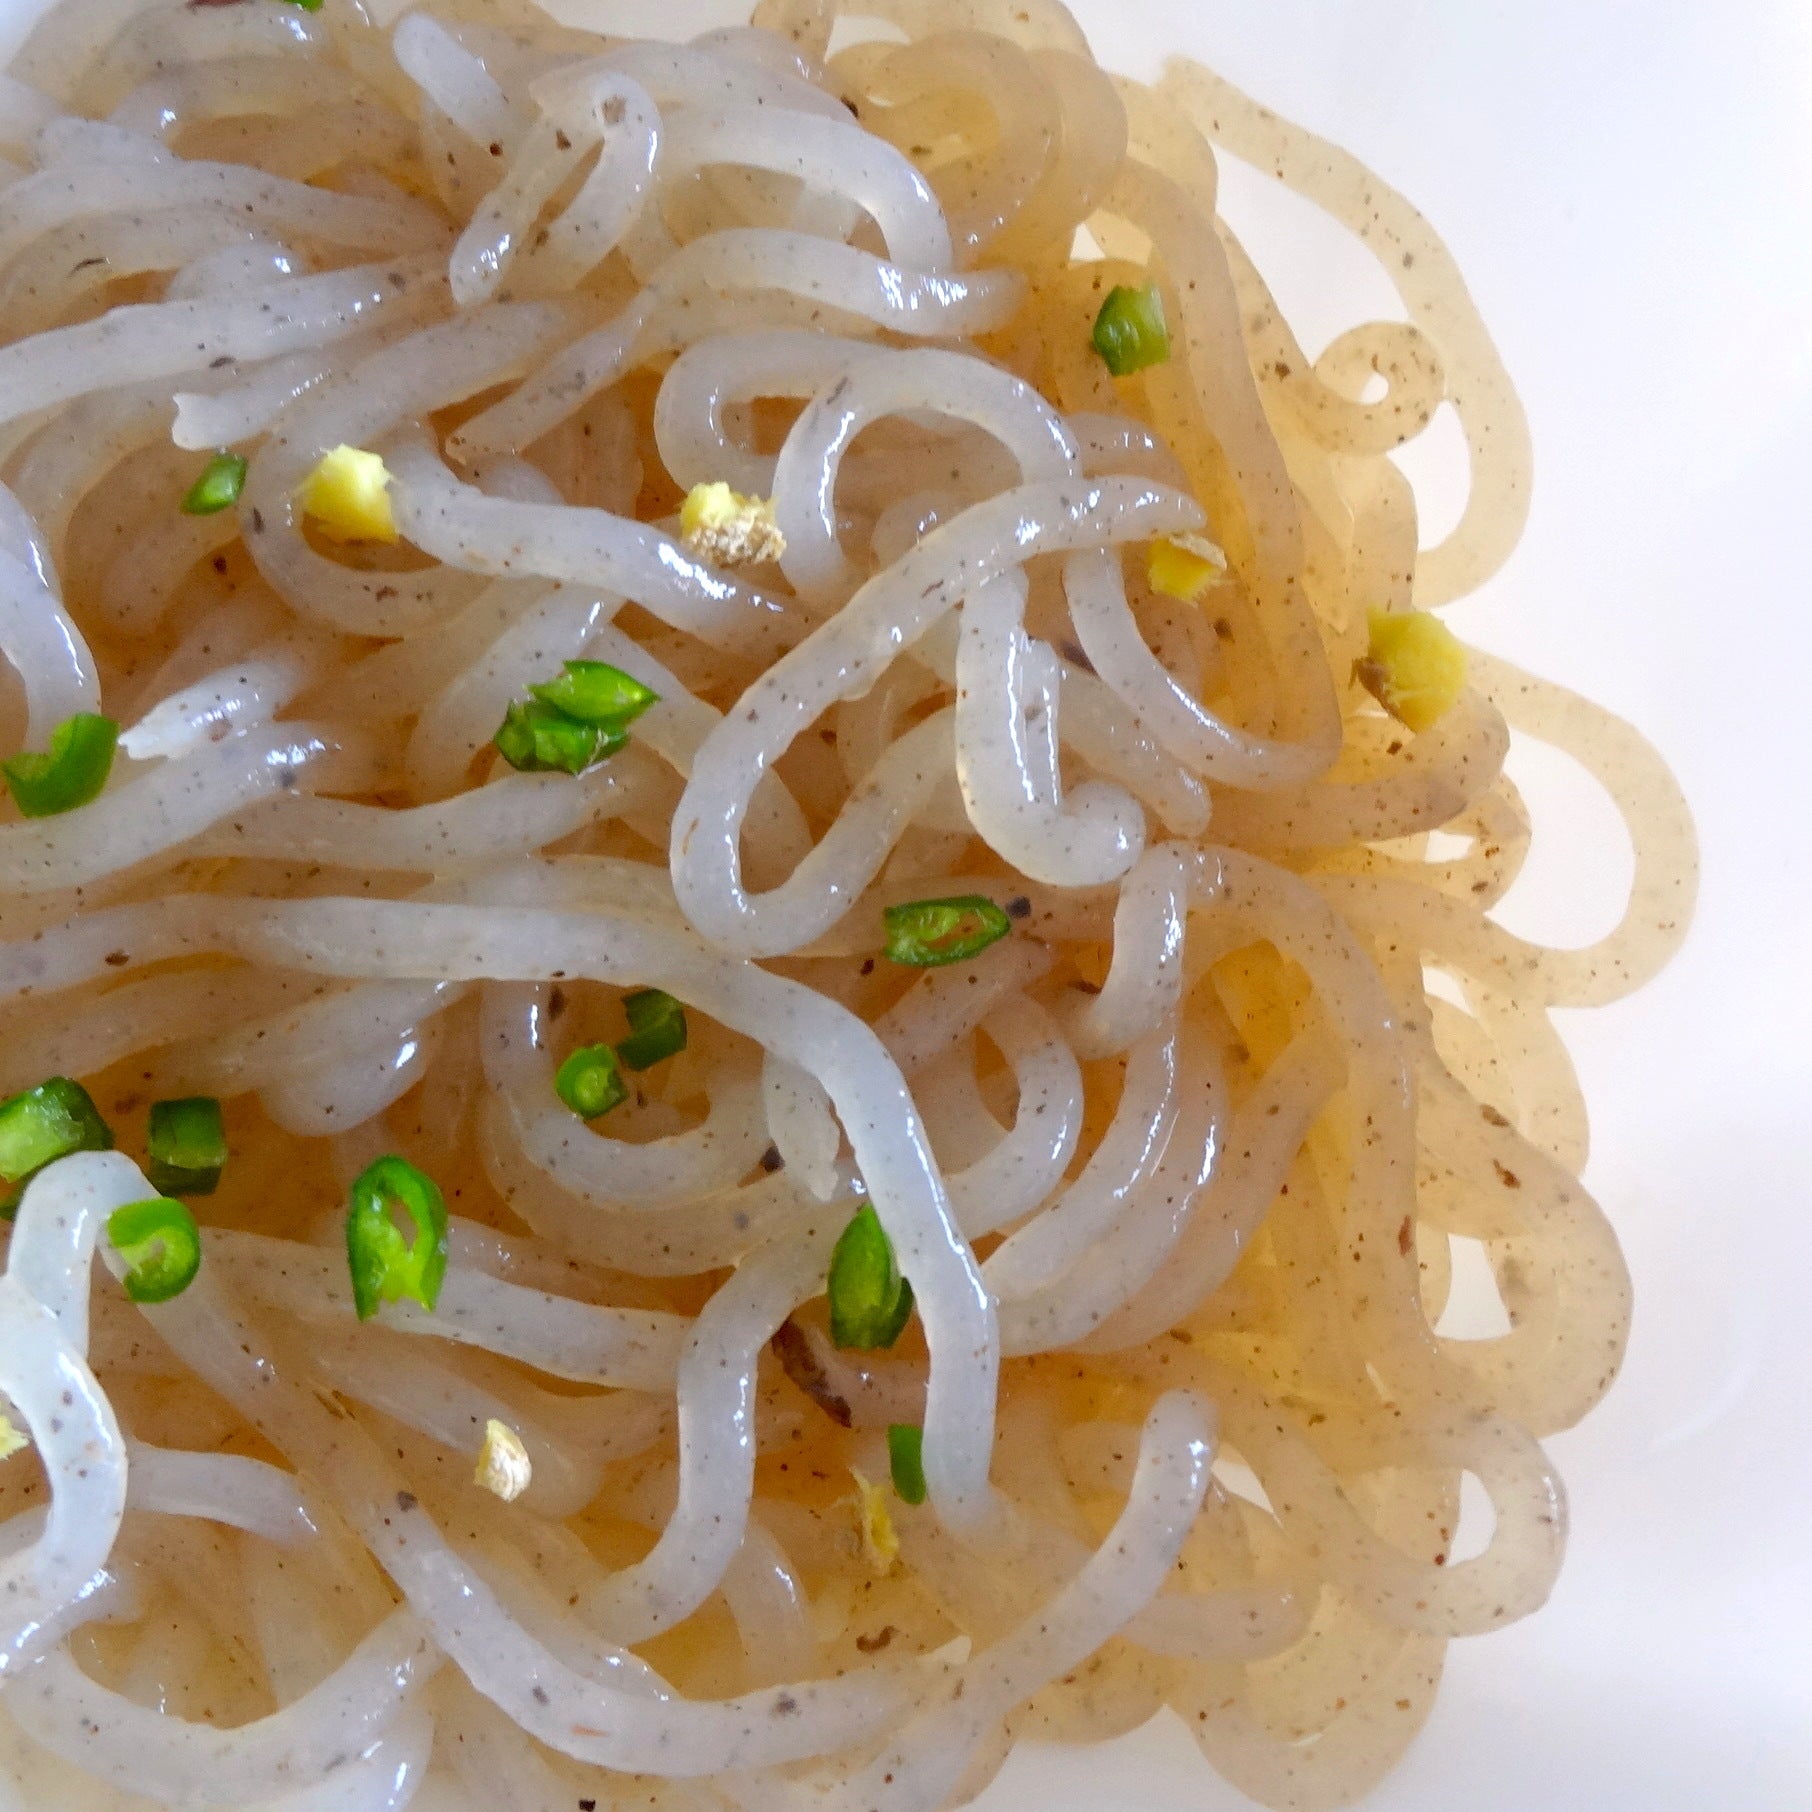 Ito Konnyaku Organic Shirataki Konjac Noodles 200g